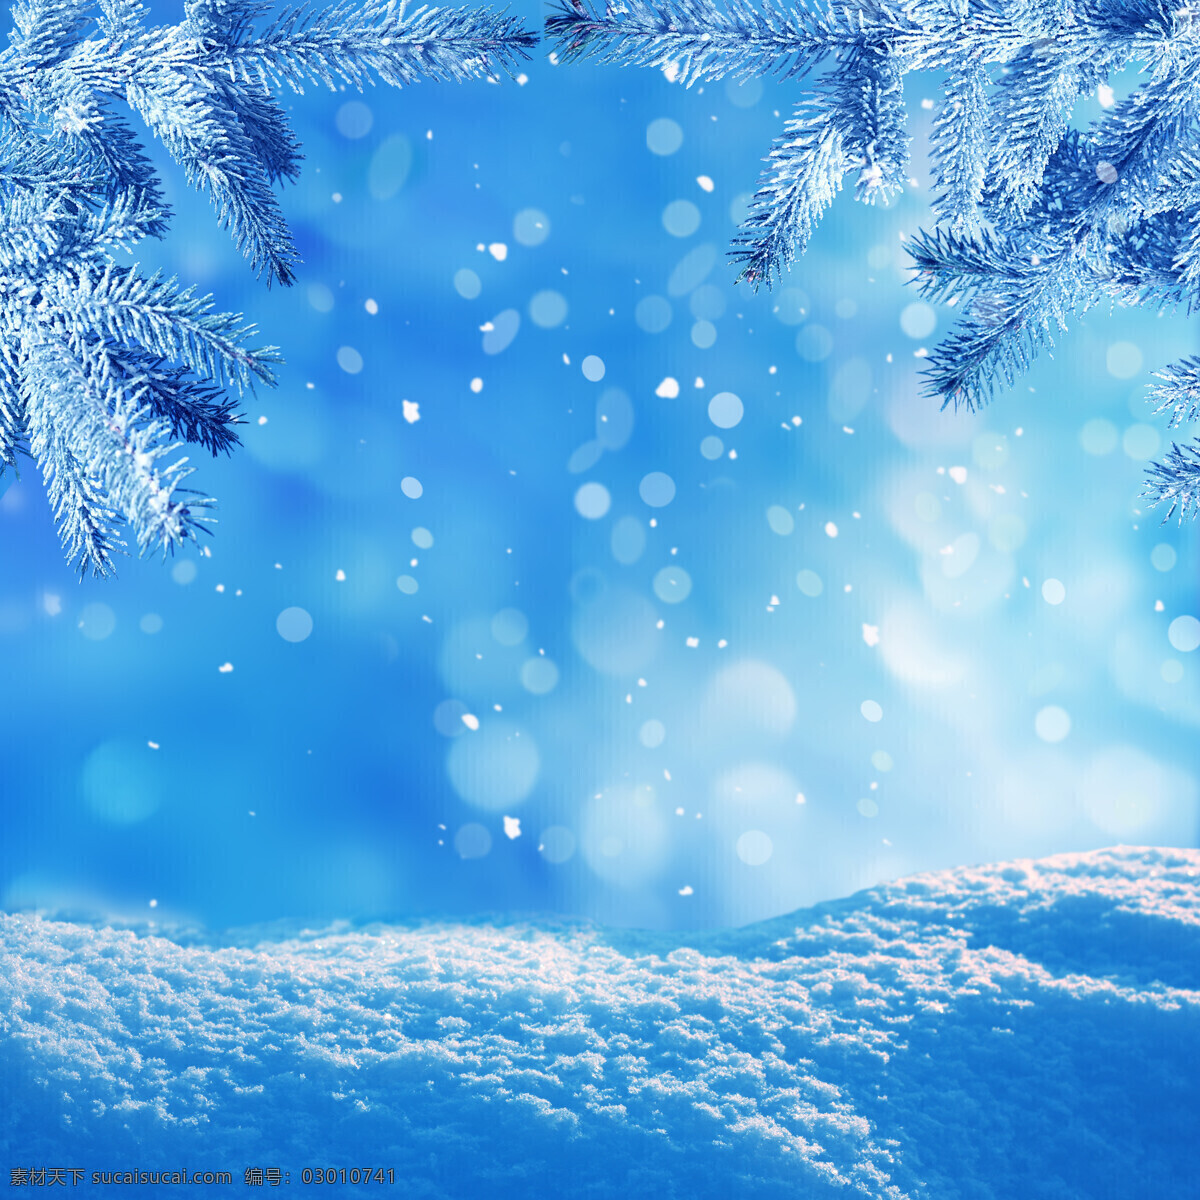 冬日雪景 冬日 雪景 雪花 积雪 蓝色 自然景观 自然风光